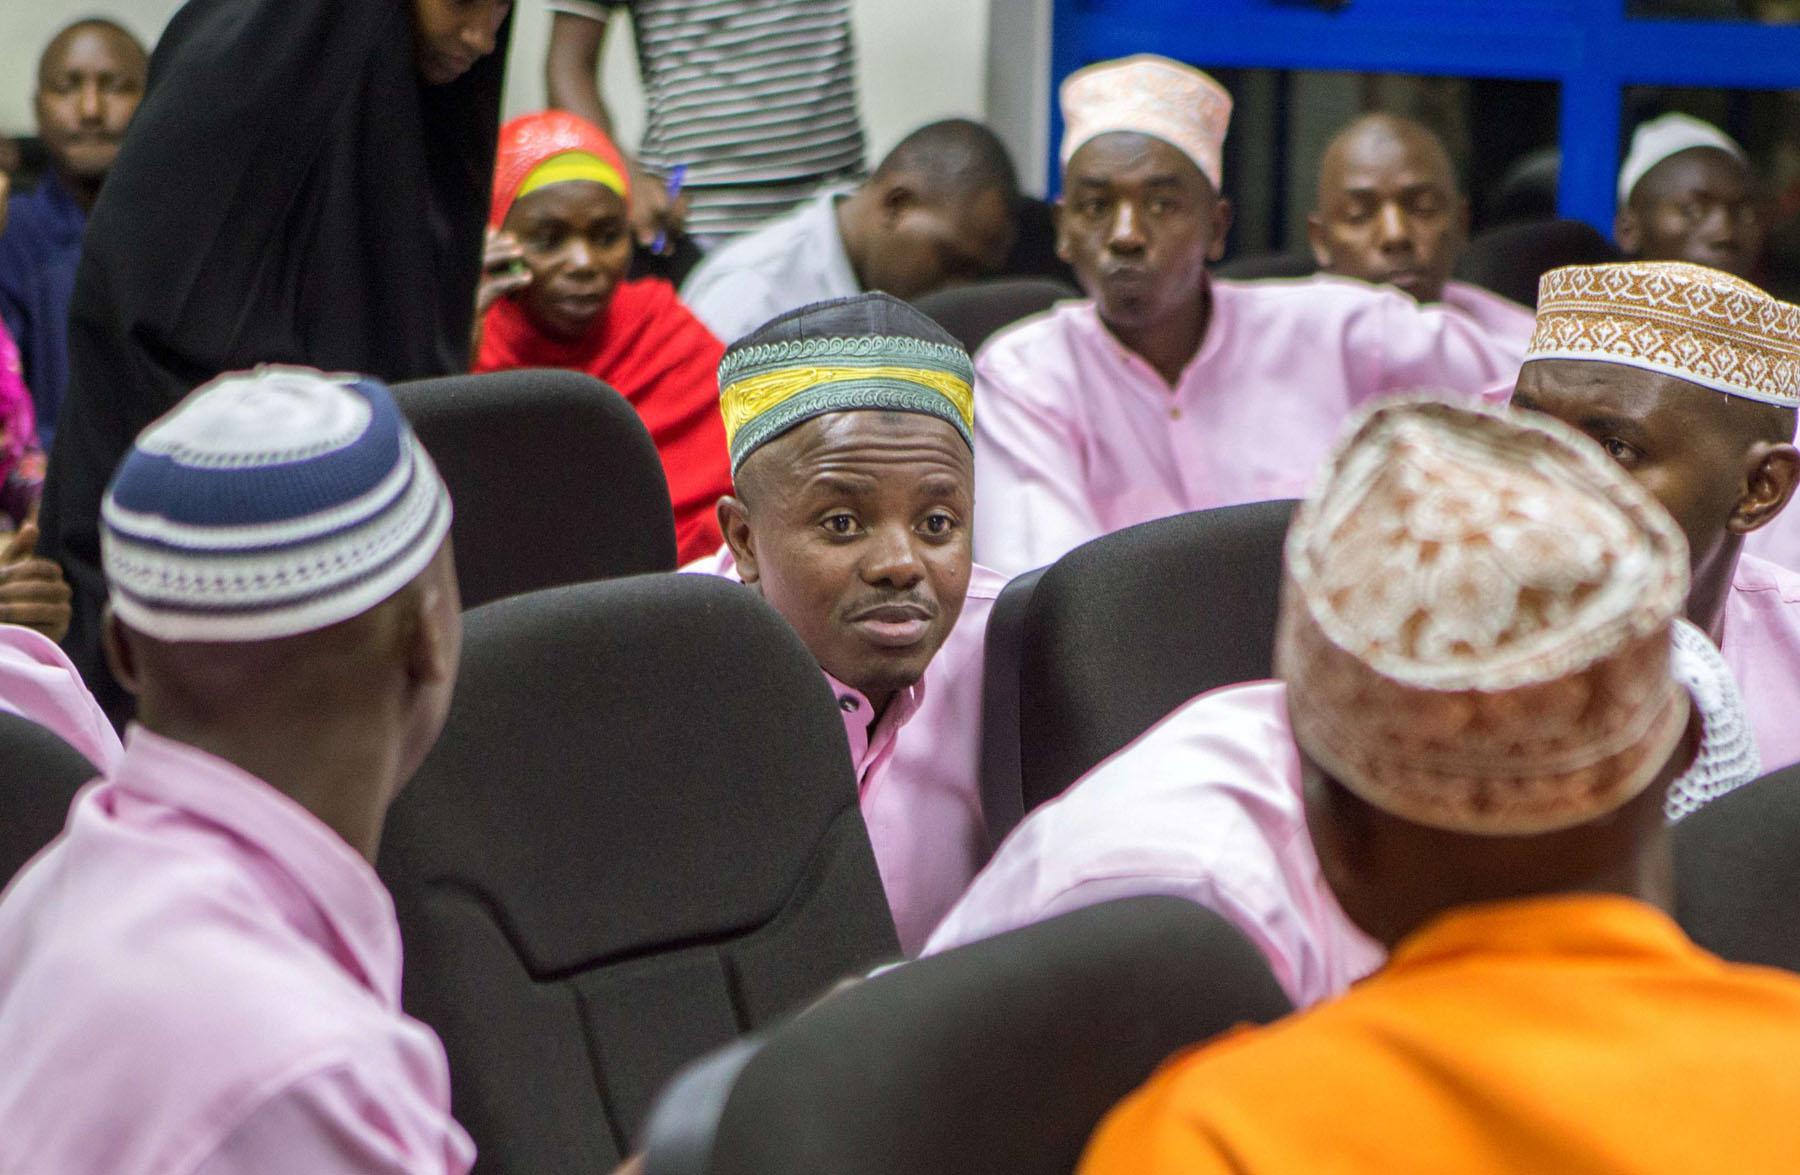 قطر صنعت ظاهرة 'الاسلاميين الجدد' في رواندا